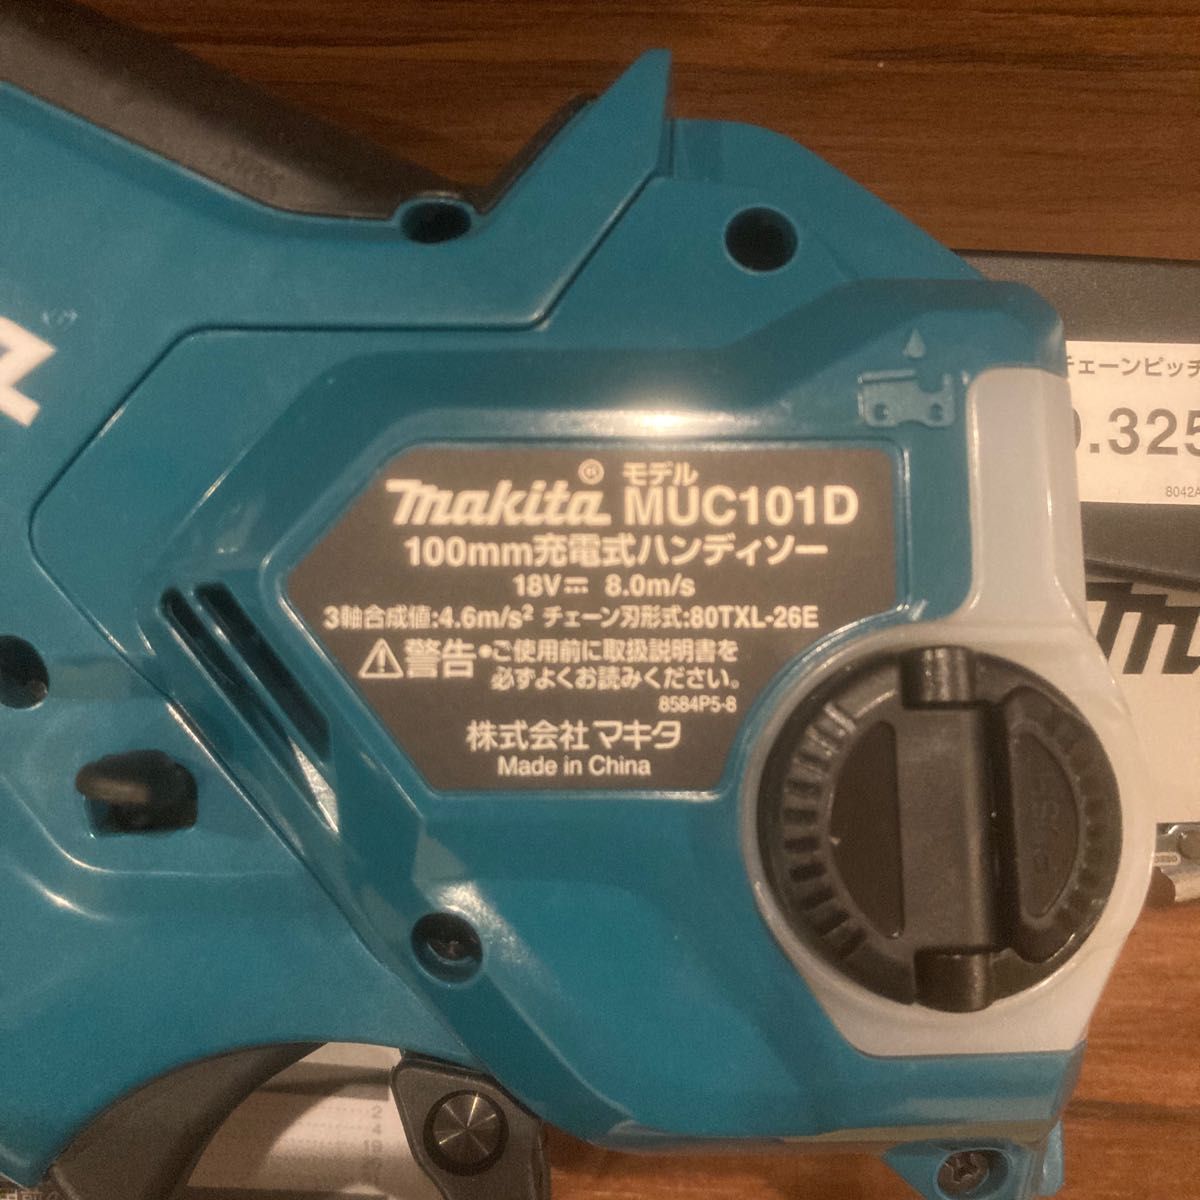 マキタ 充電式ハンディソー MUC101D 充電器 バッテリー別売